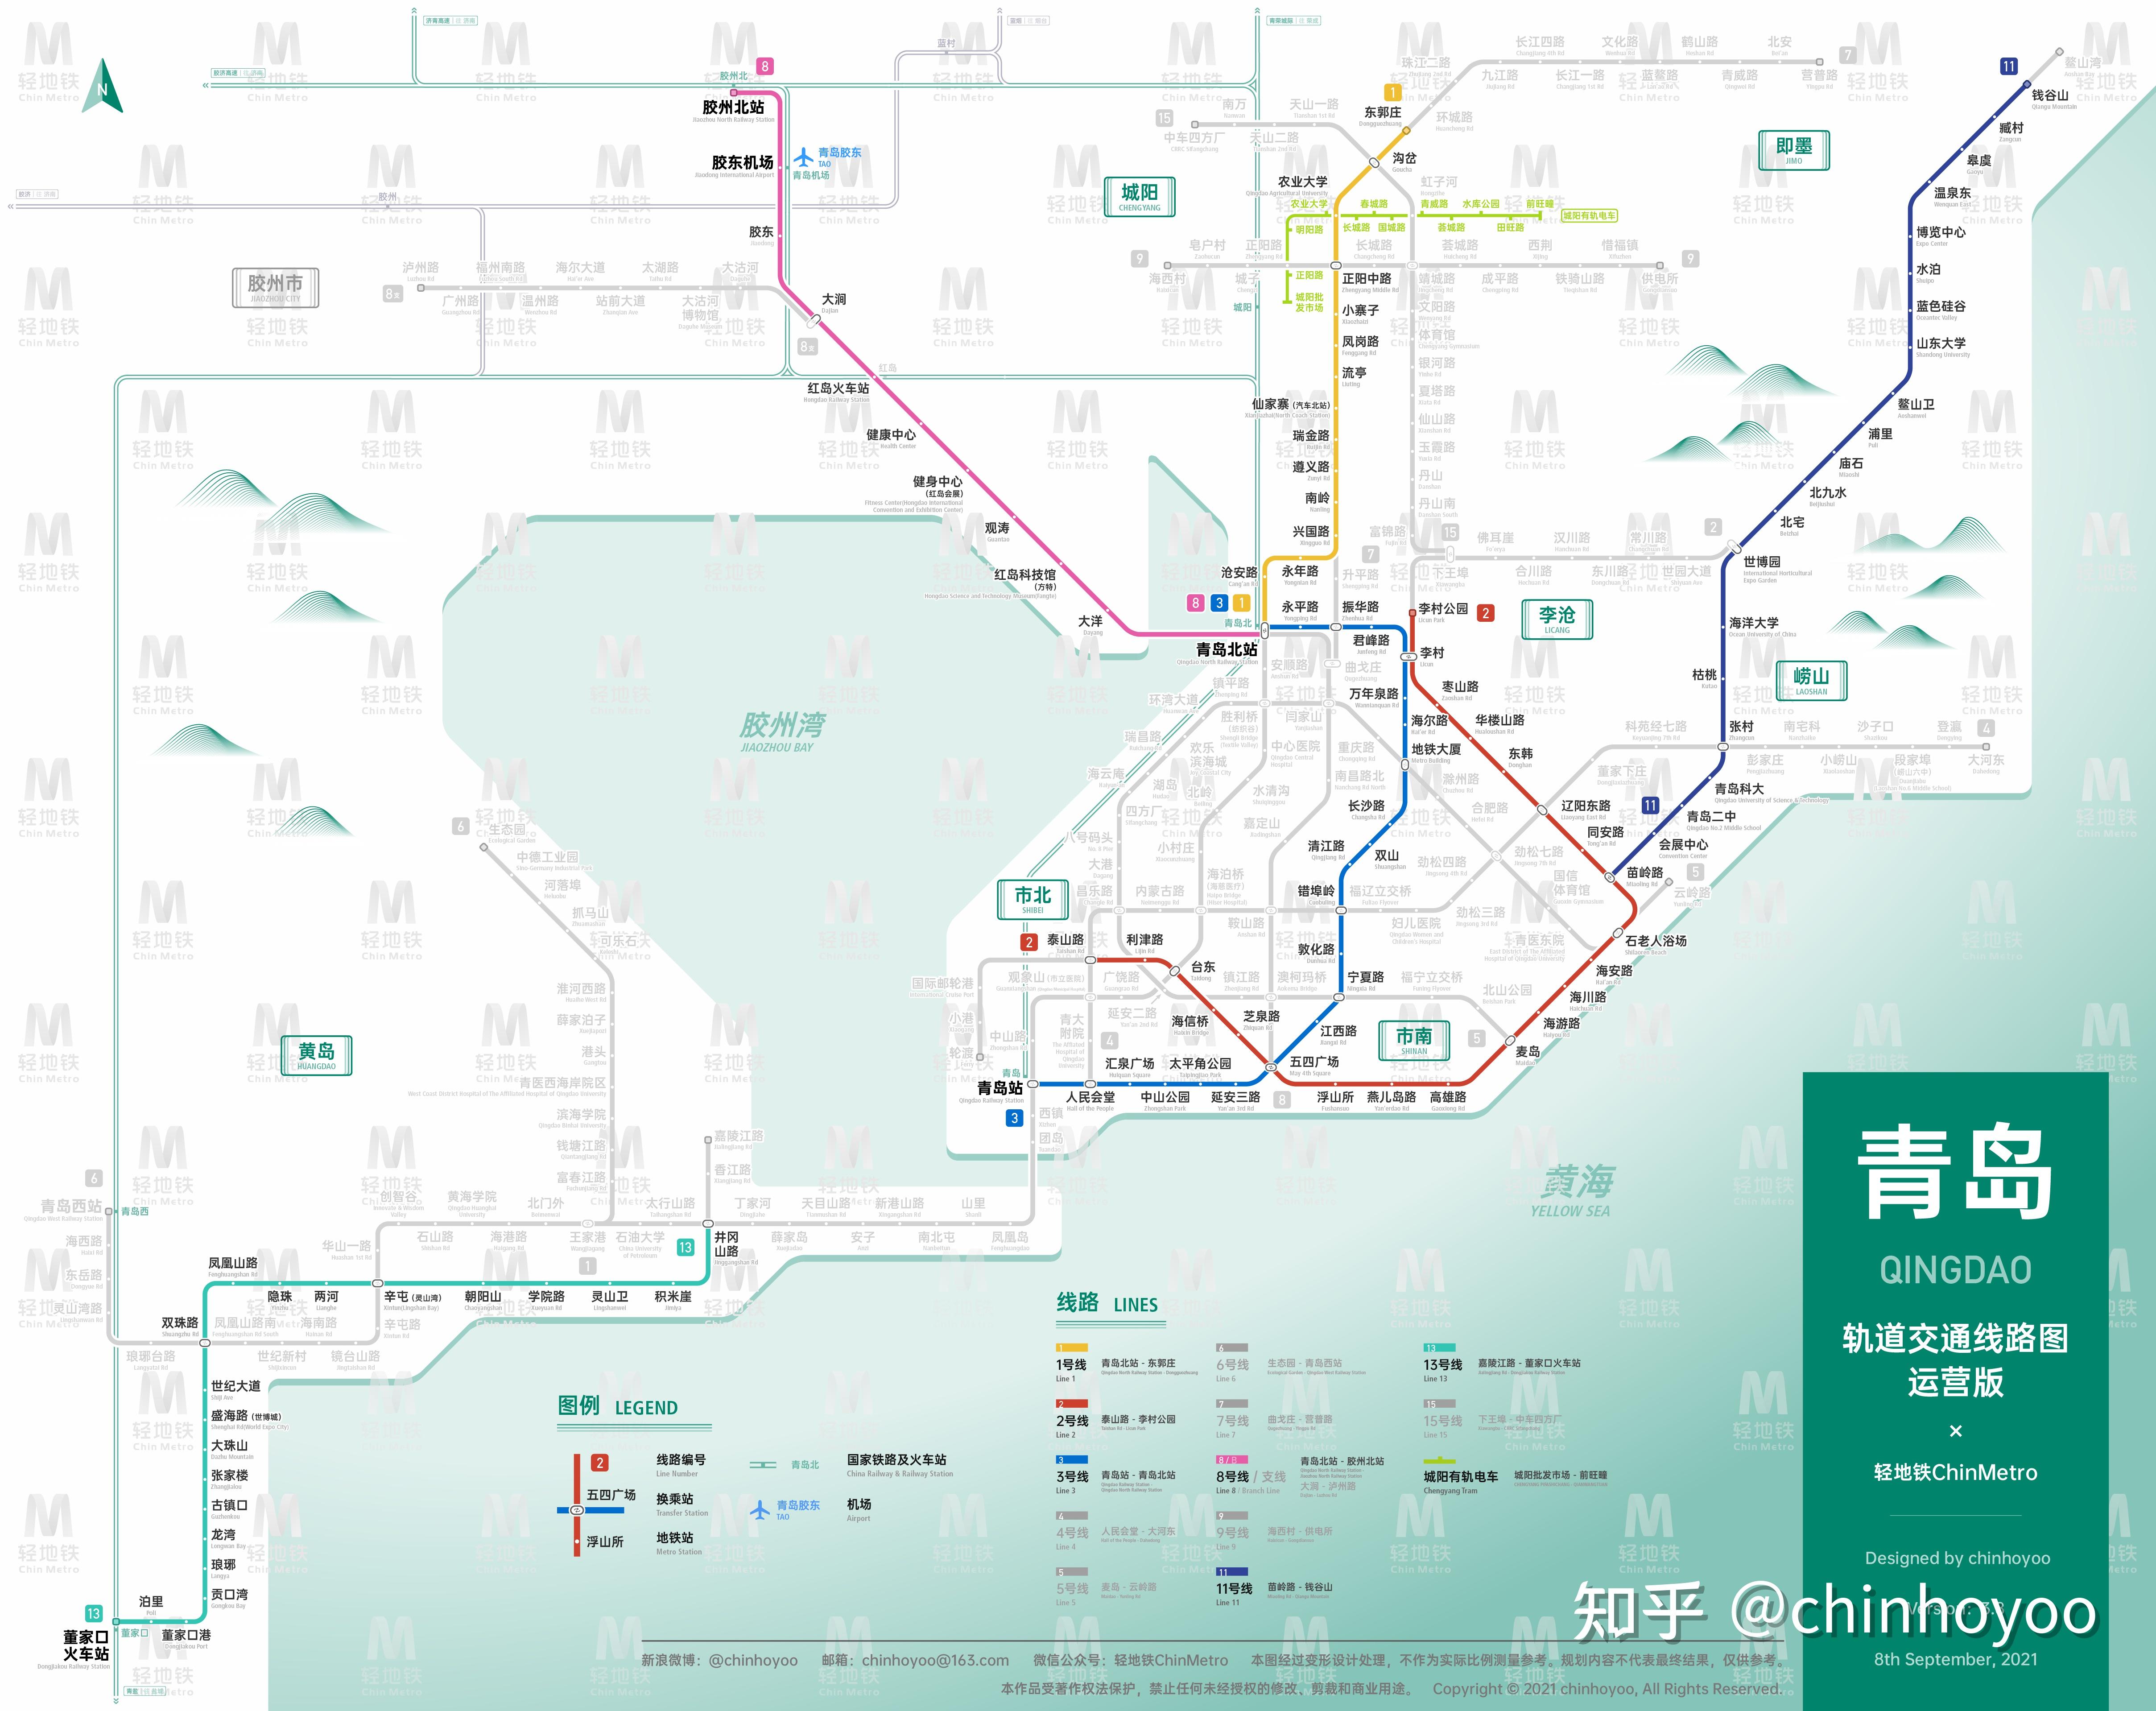 青岛轨道交通线路图(三期建设规划 / 运营版)